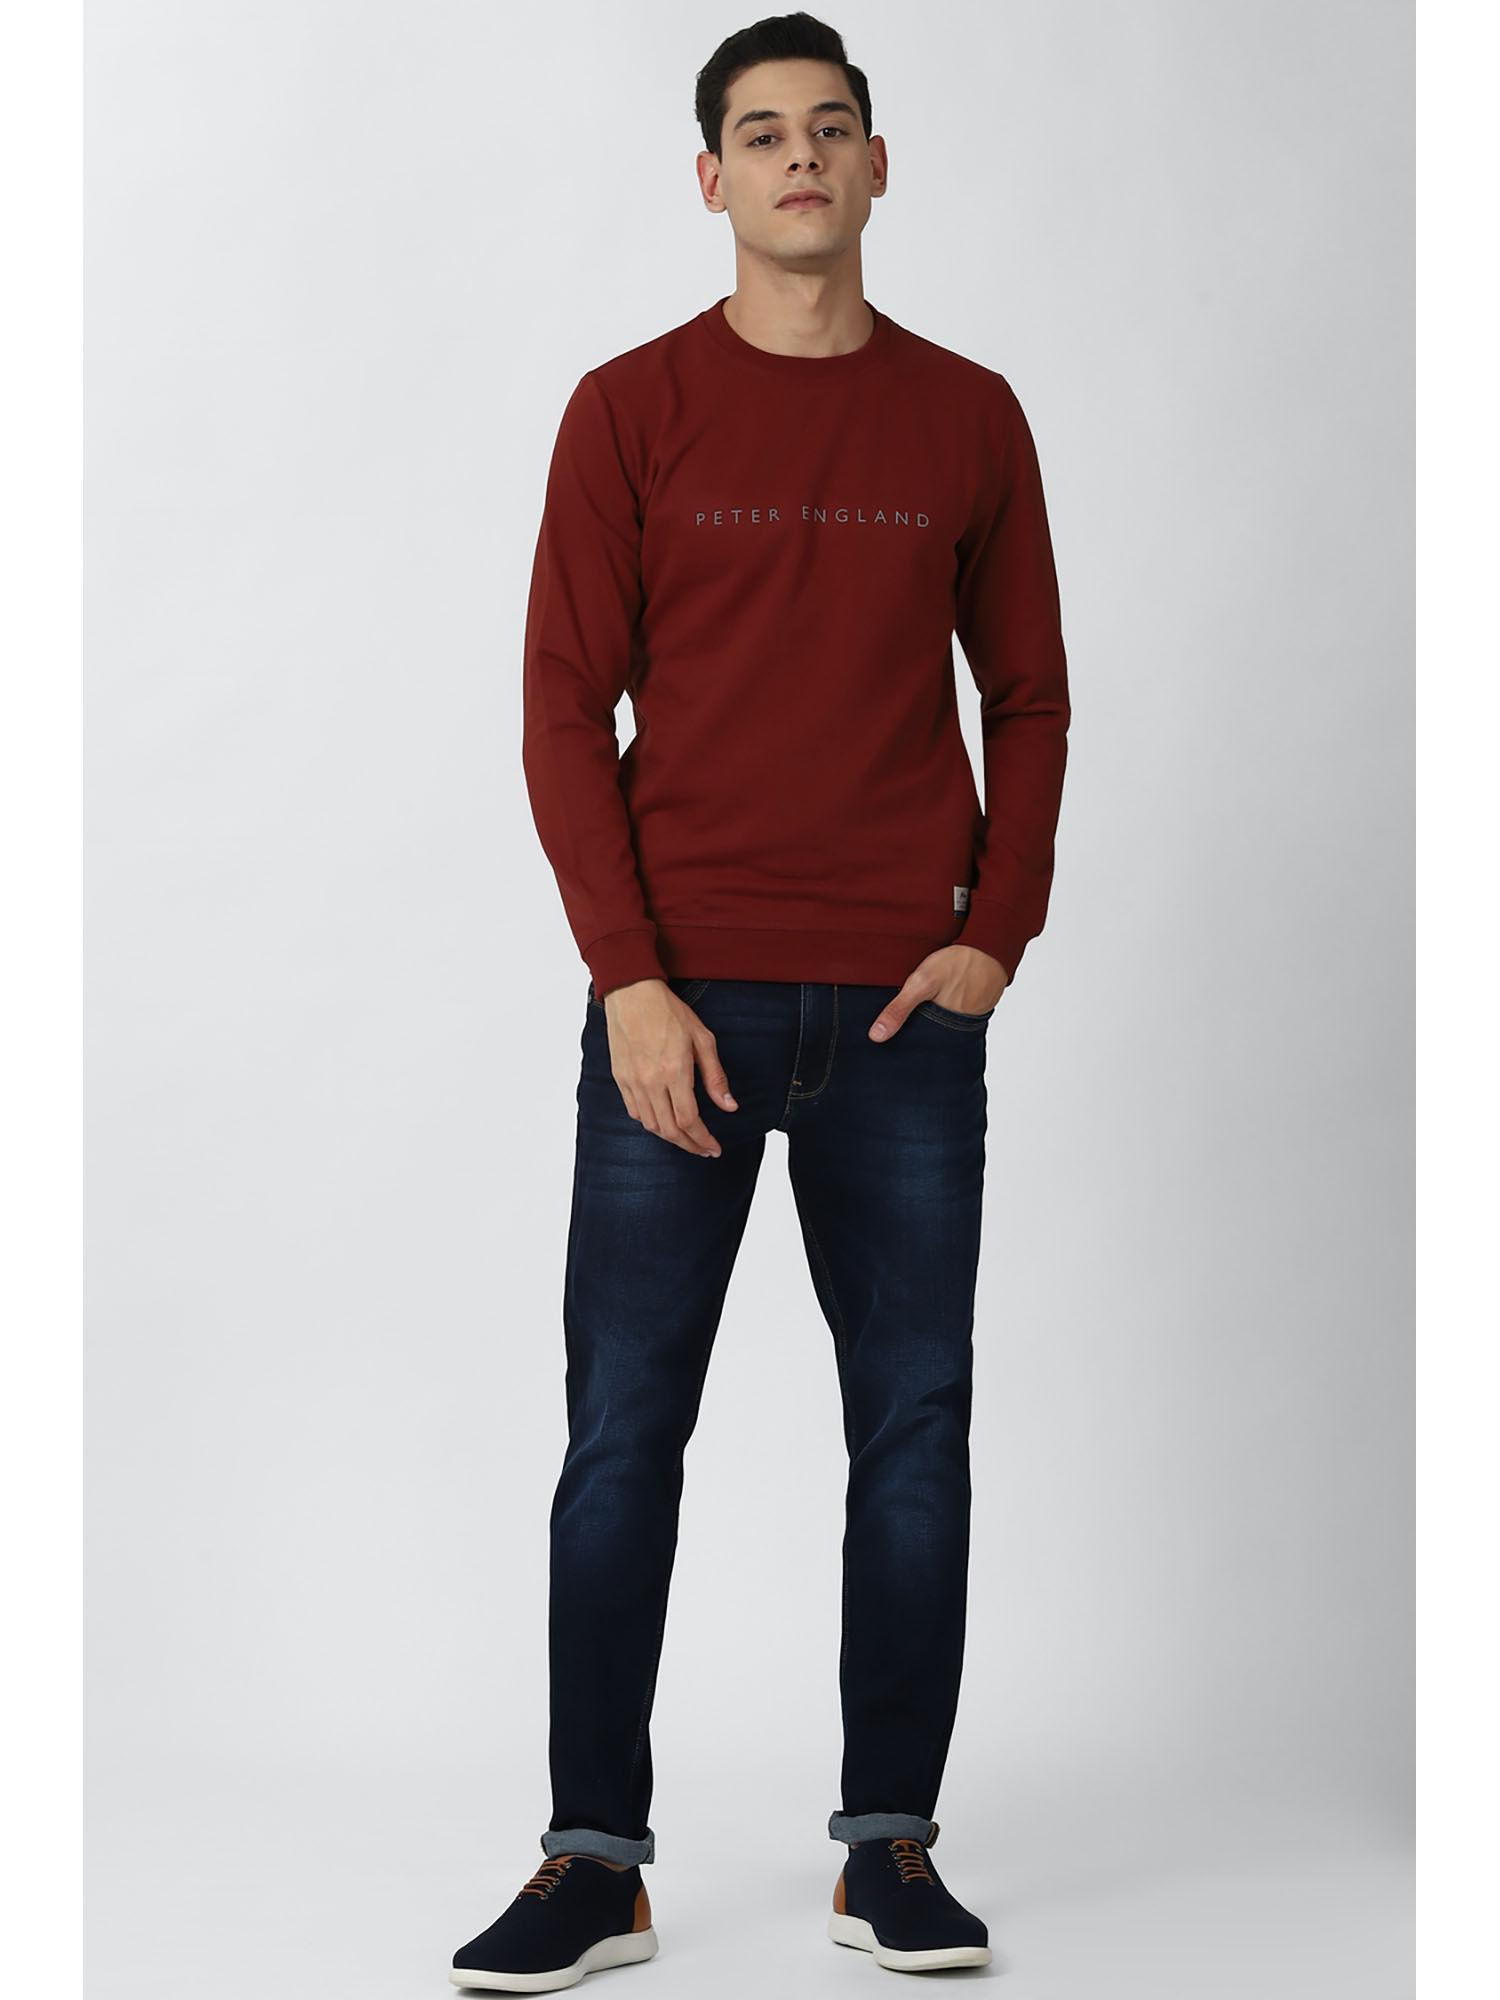 maroon sweatshirt